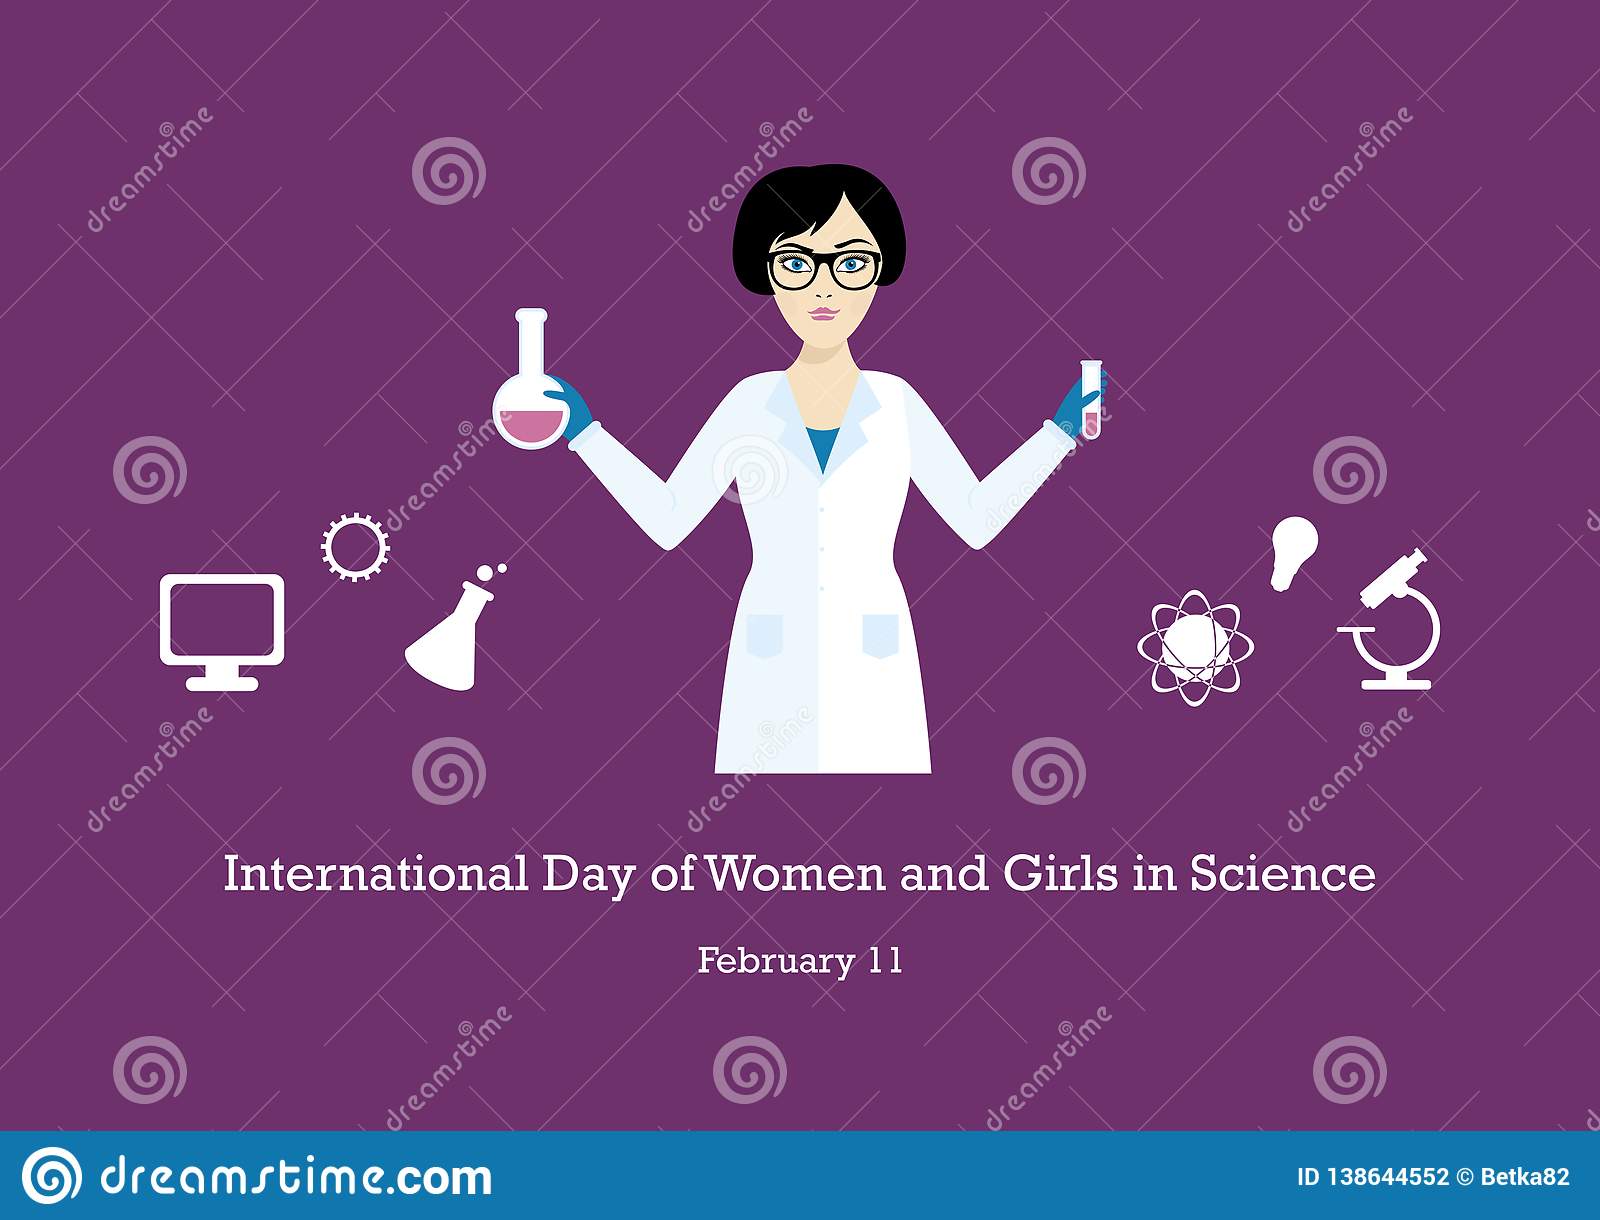 Se împlinesc 6 ani de când se sărbătoreşte Ziua internaţională a femeilor în ştiinţă